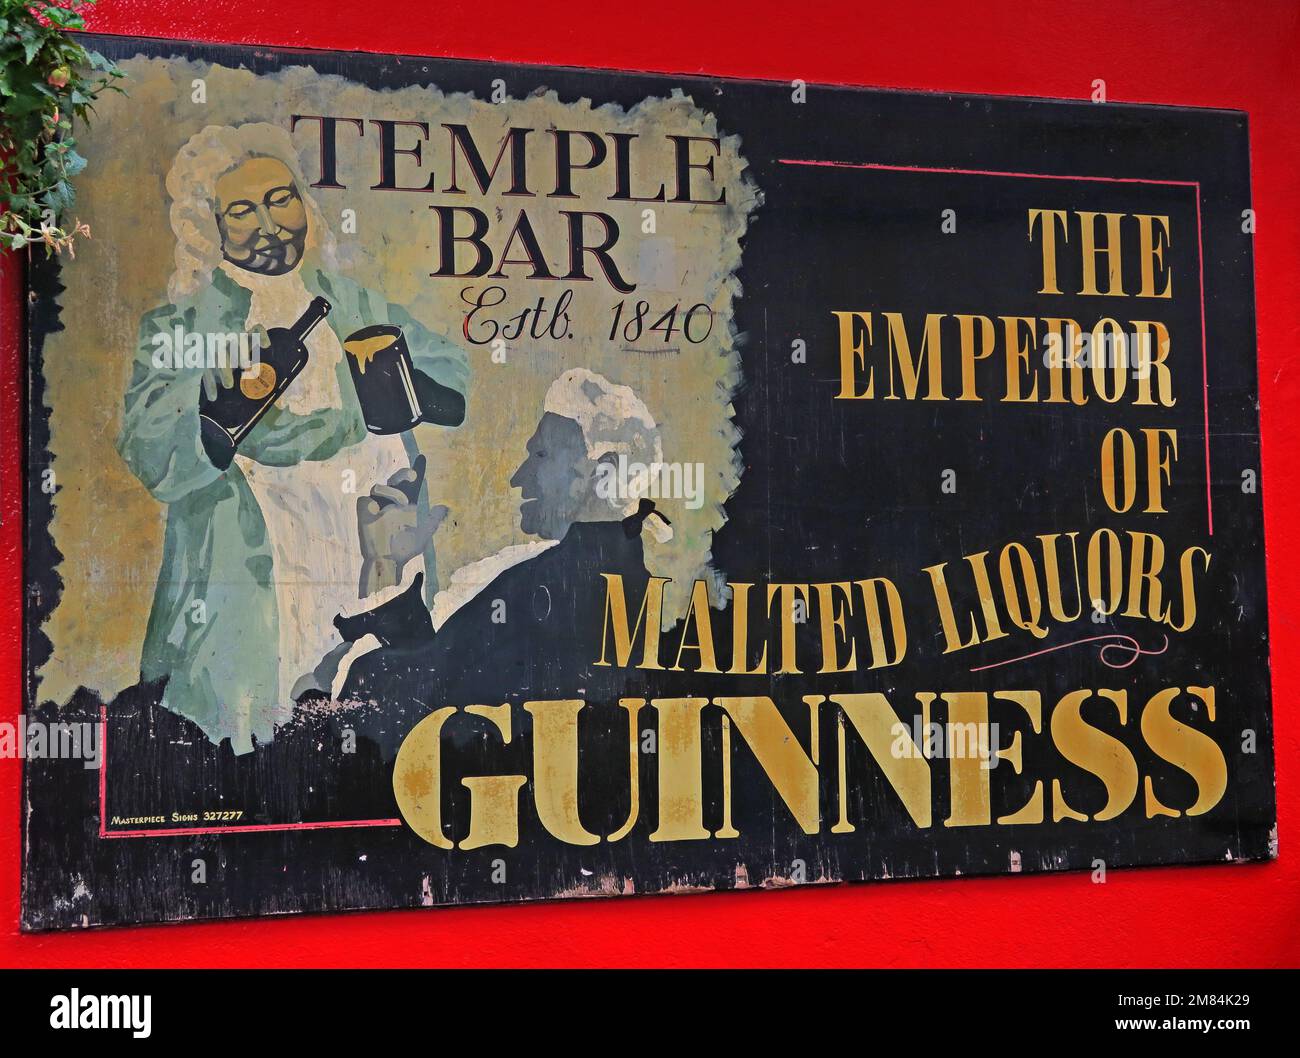 Guinness Empereur de liqueurs maltées, au Temple Bar, Dublin, est 1840, 47-48 Temple Bar, Dublin 2, D02 N725, Eire, Irlande Banque D'Images